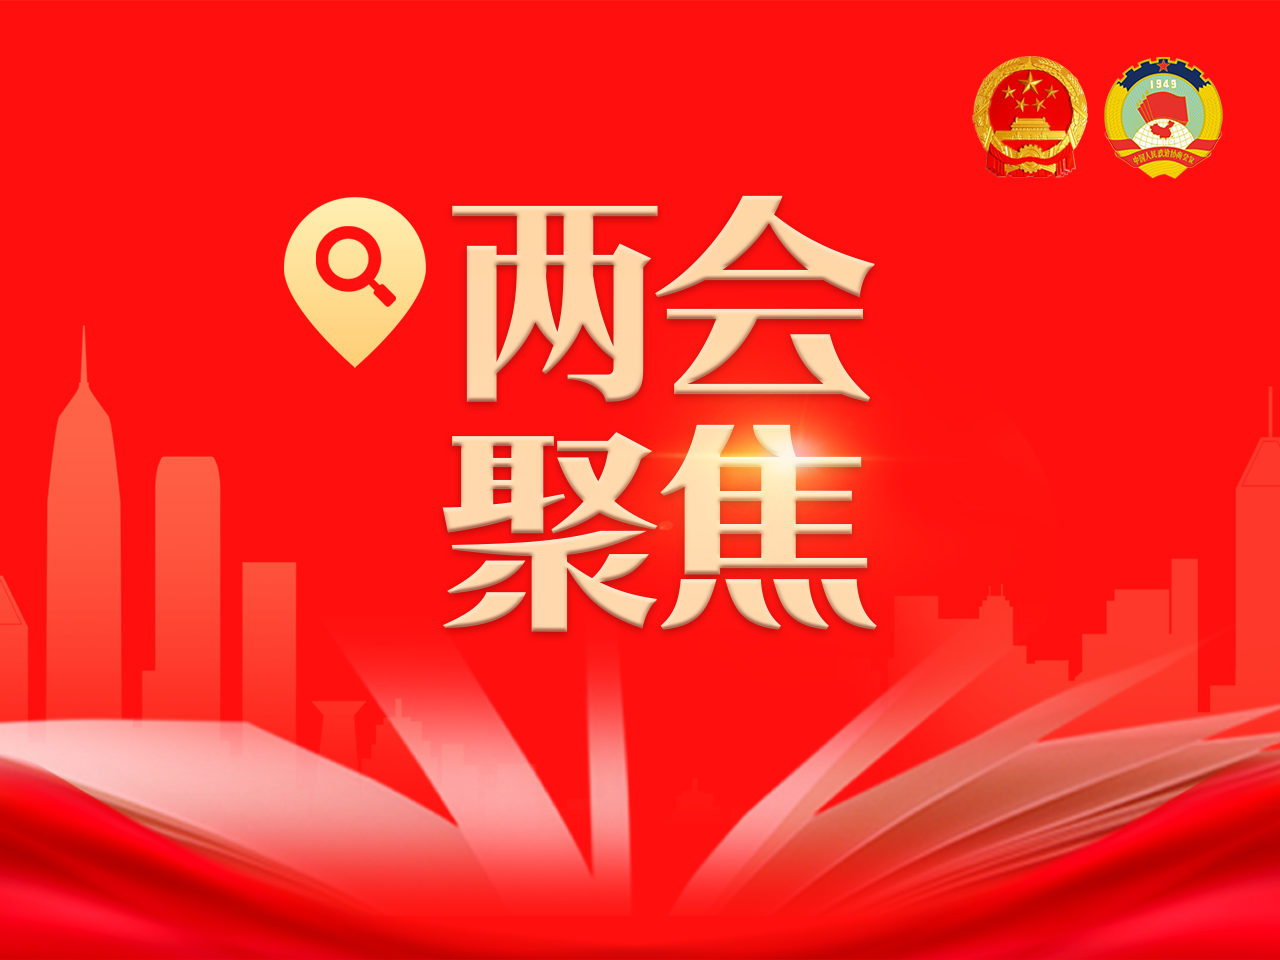 深圳市人大常委会工作报告提出今年安排法规项目33部，持续强化“双区”建设法治保障